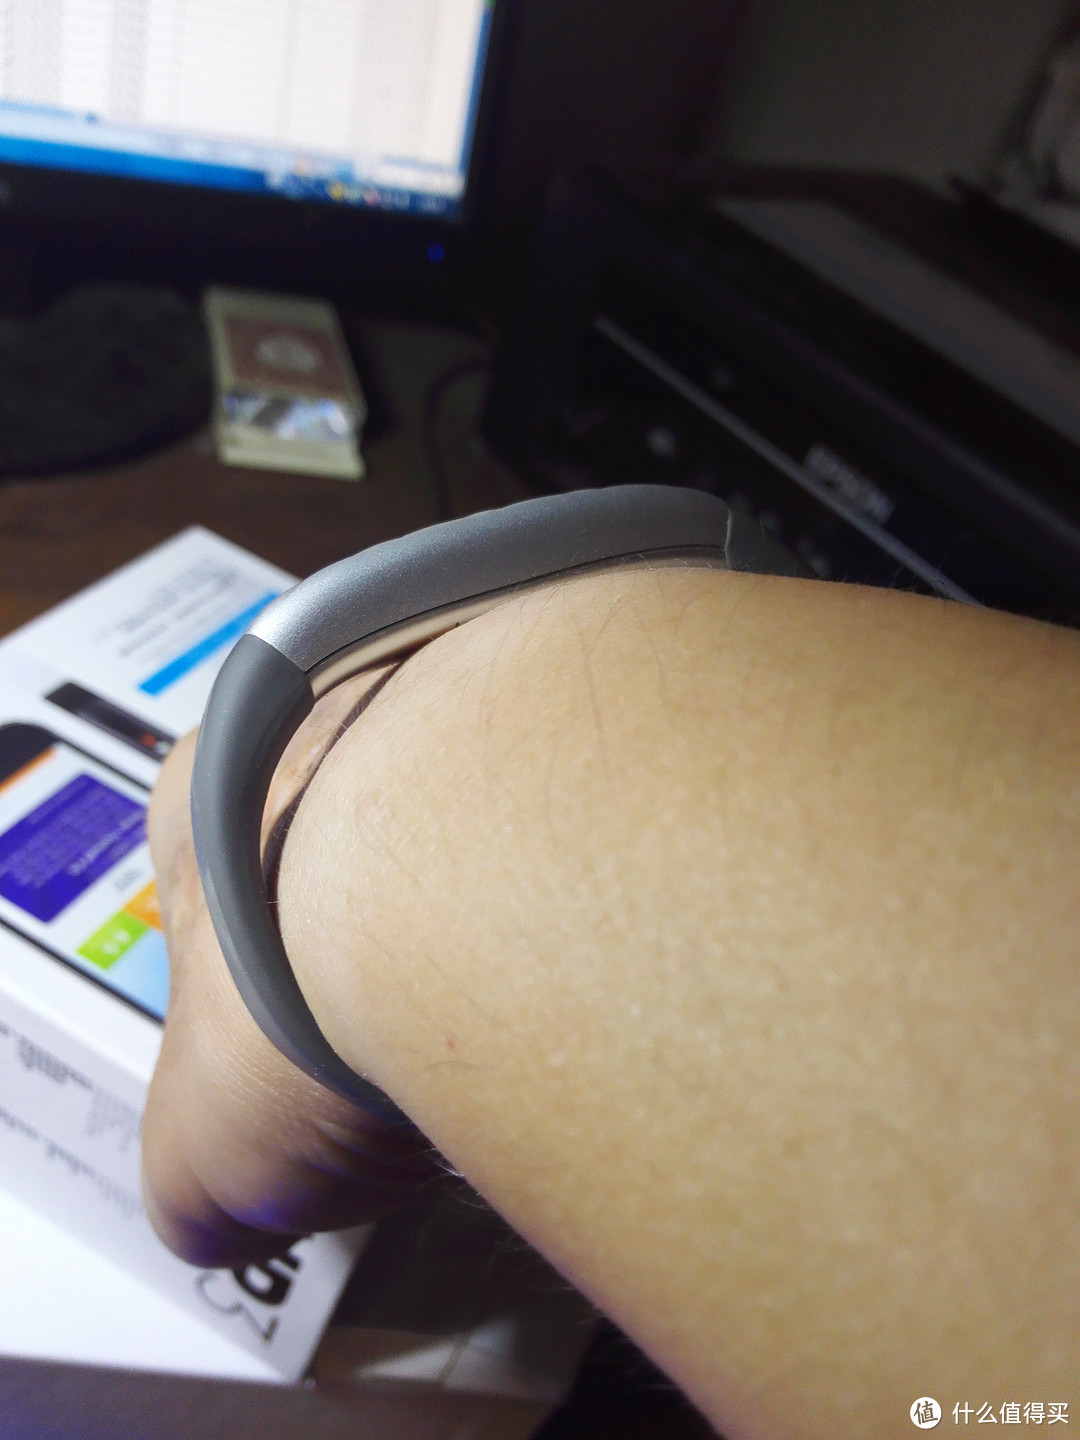 国行 Jawbone 卓棒 UP3 运动健康手环 使用一年感受